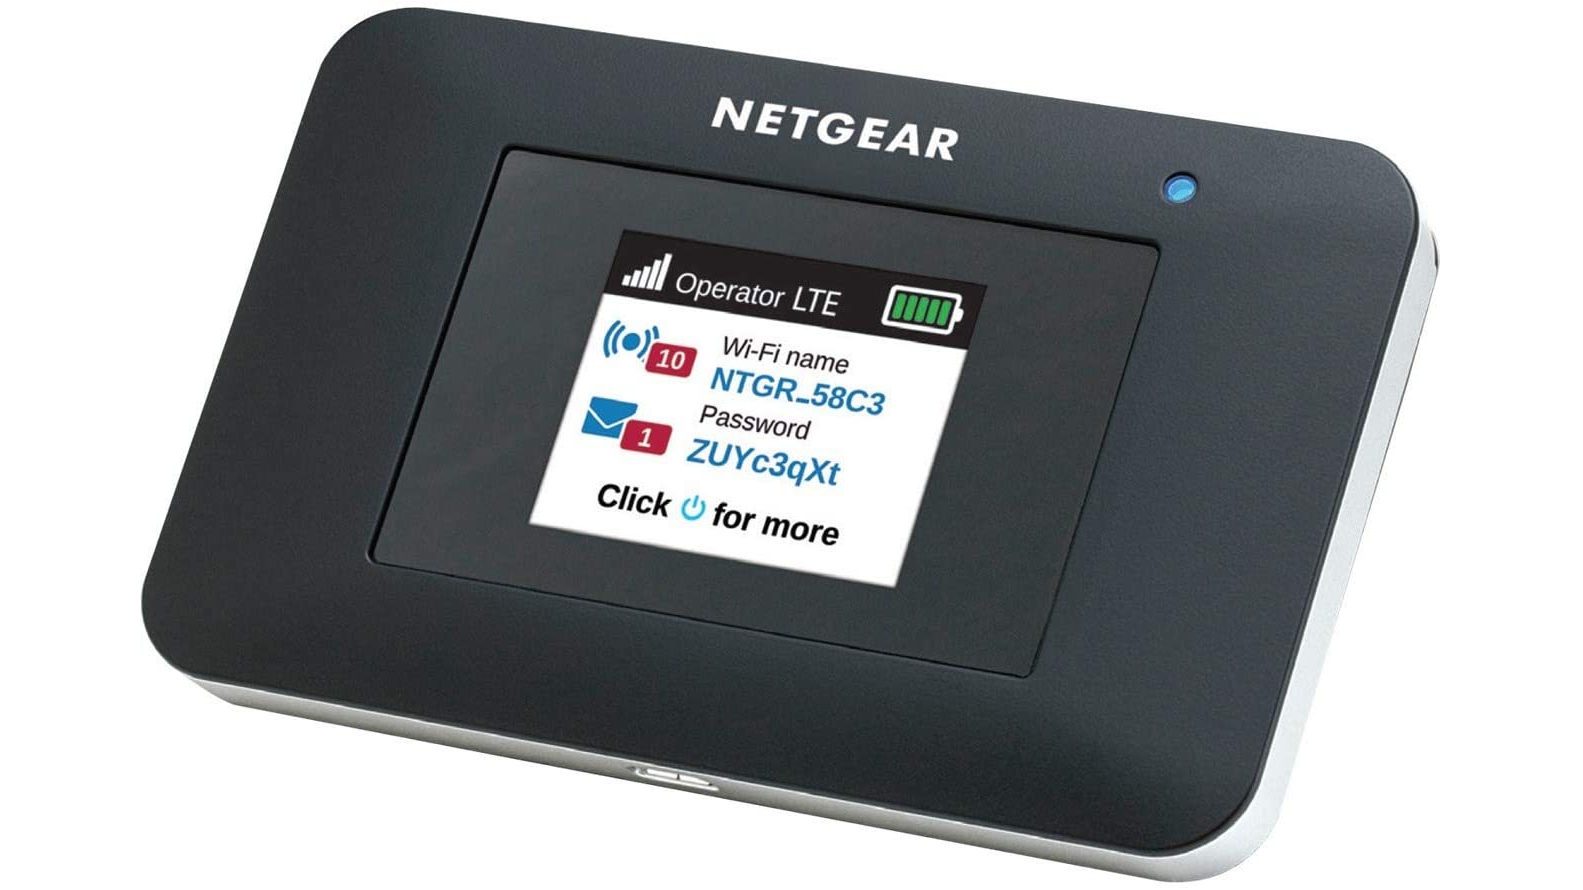 NETGEAR AirCard 797 - The best mobile hotspots